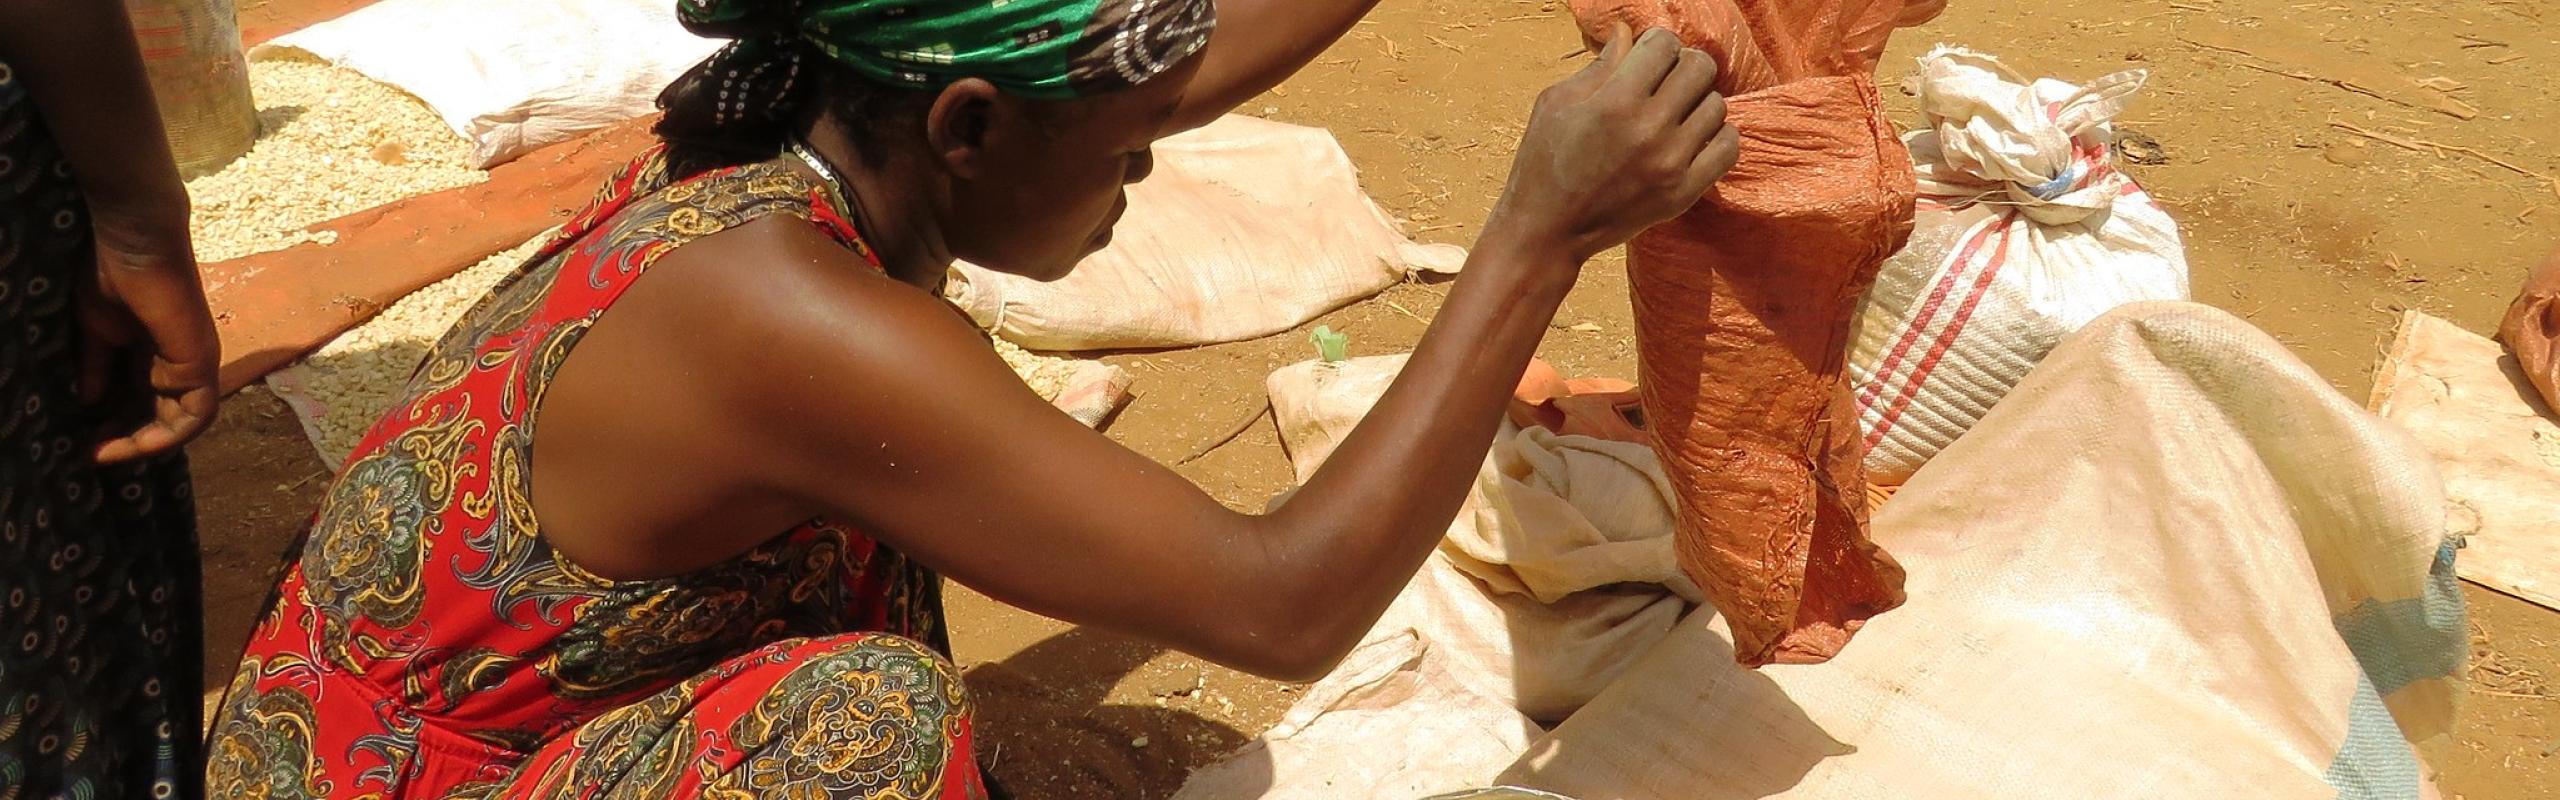 Une femme éthiopienne s'accroupit sur le sol au milieu de sacs de maïs et mesure des grains de maïs dans une boîte métallique